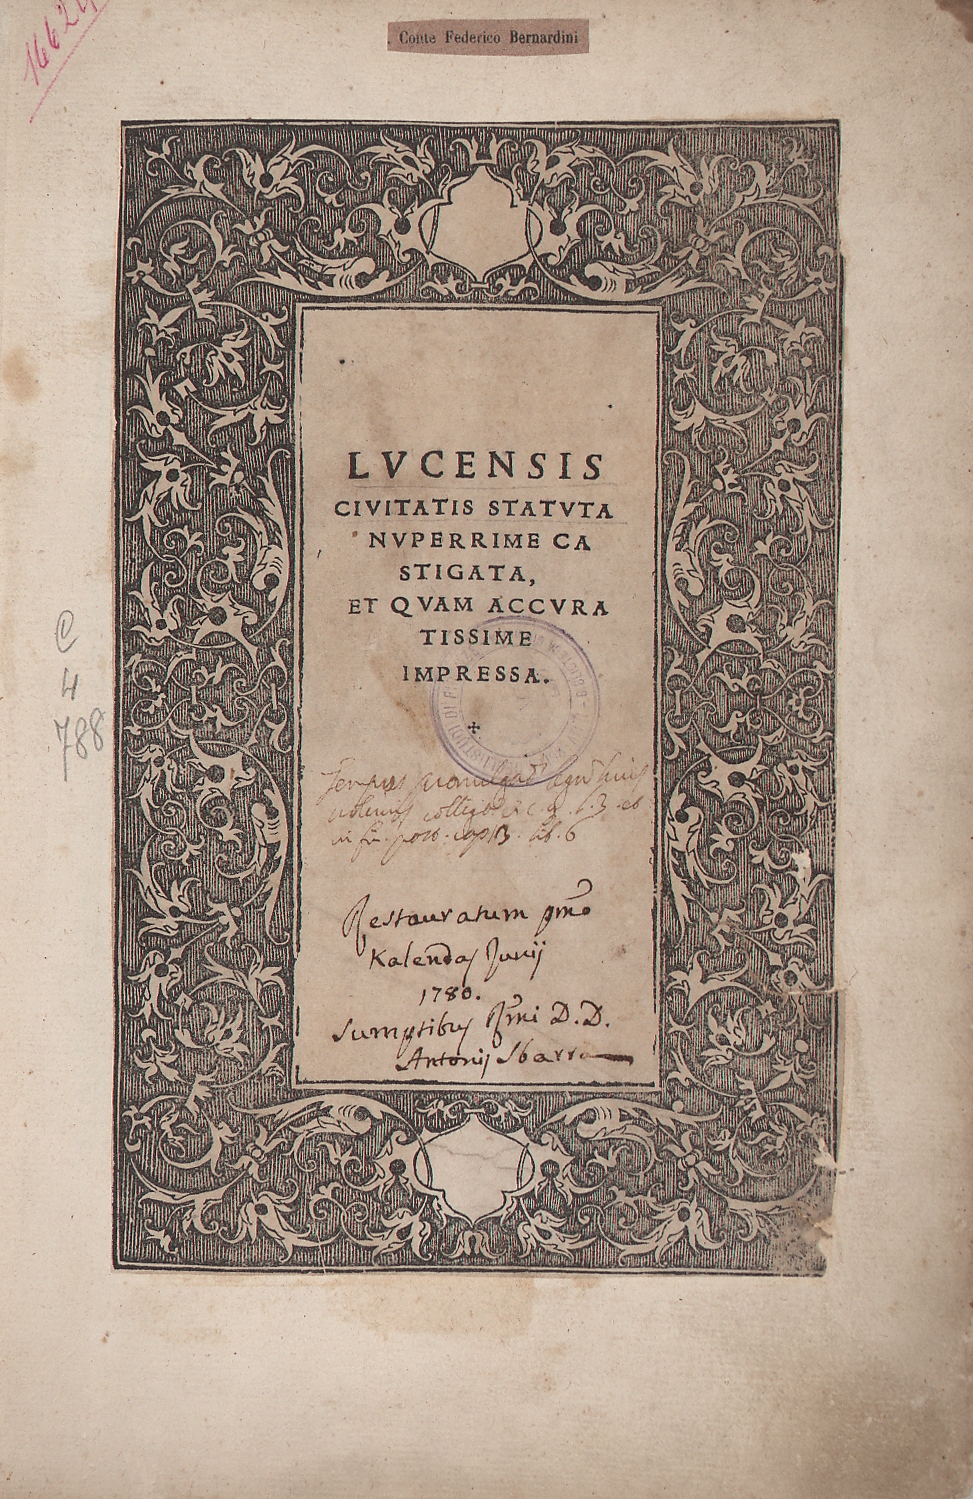 Lucensis civitatis statuta 